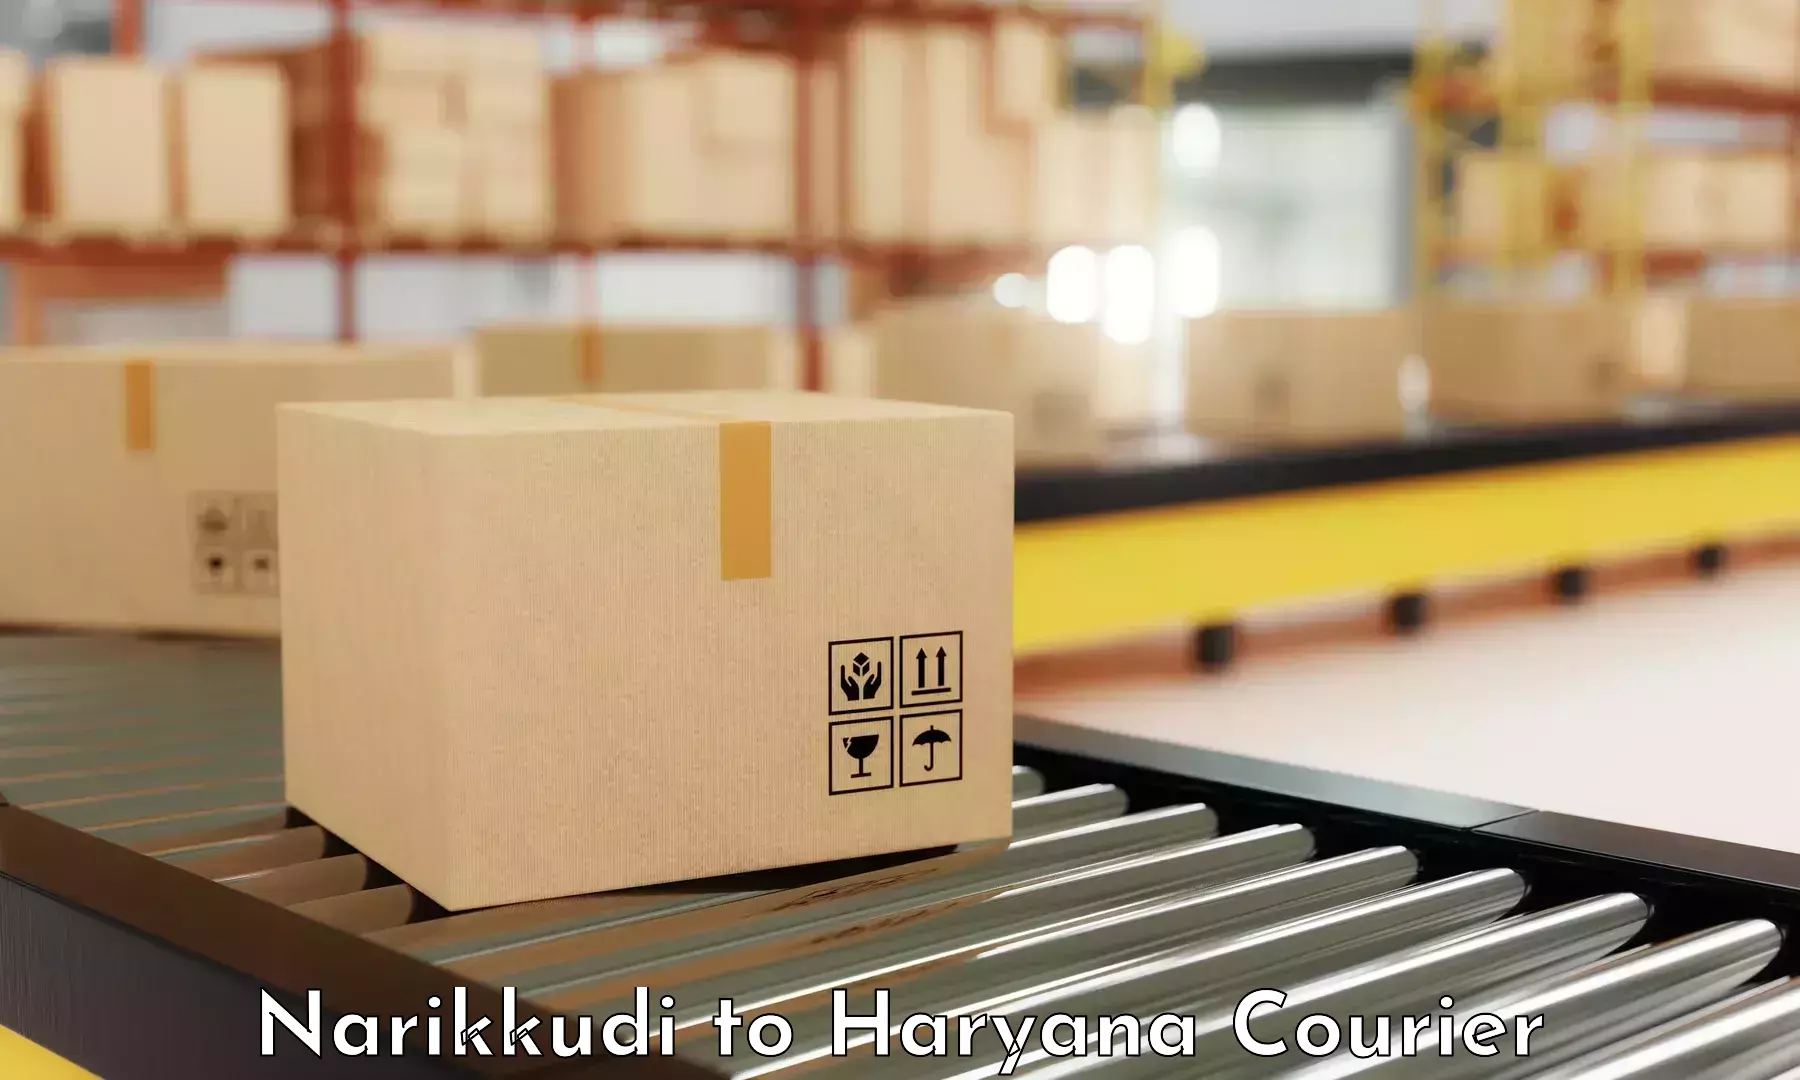 Efficient order fulfillment Narikkudi to Haryana